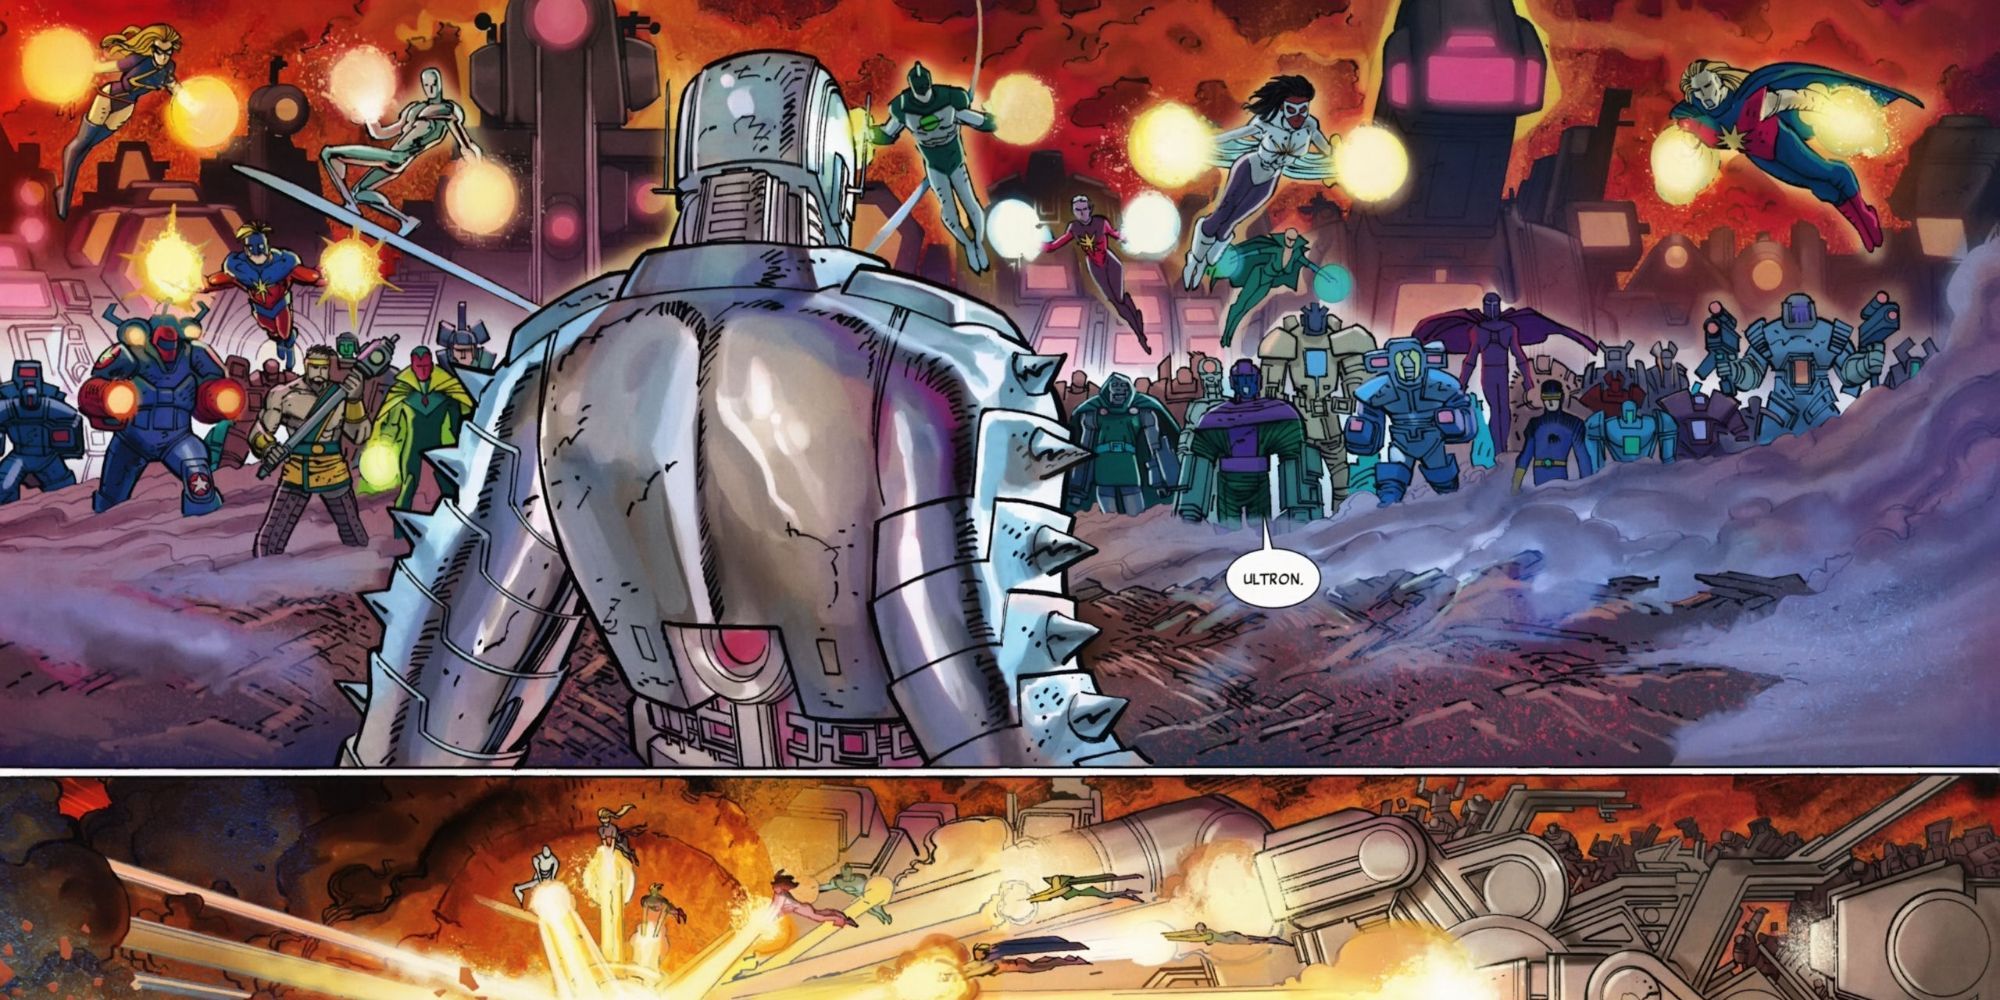 Earth-10943 Ultron in comic books